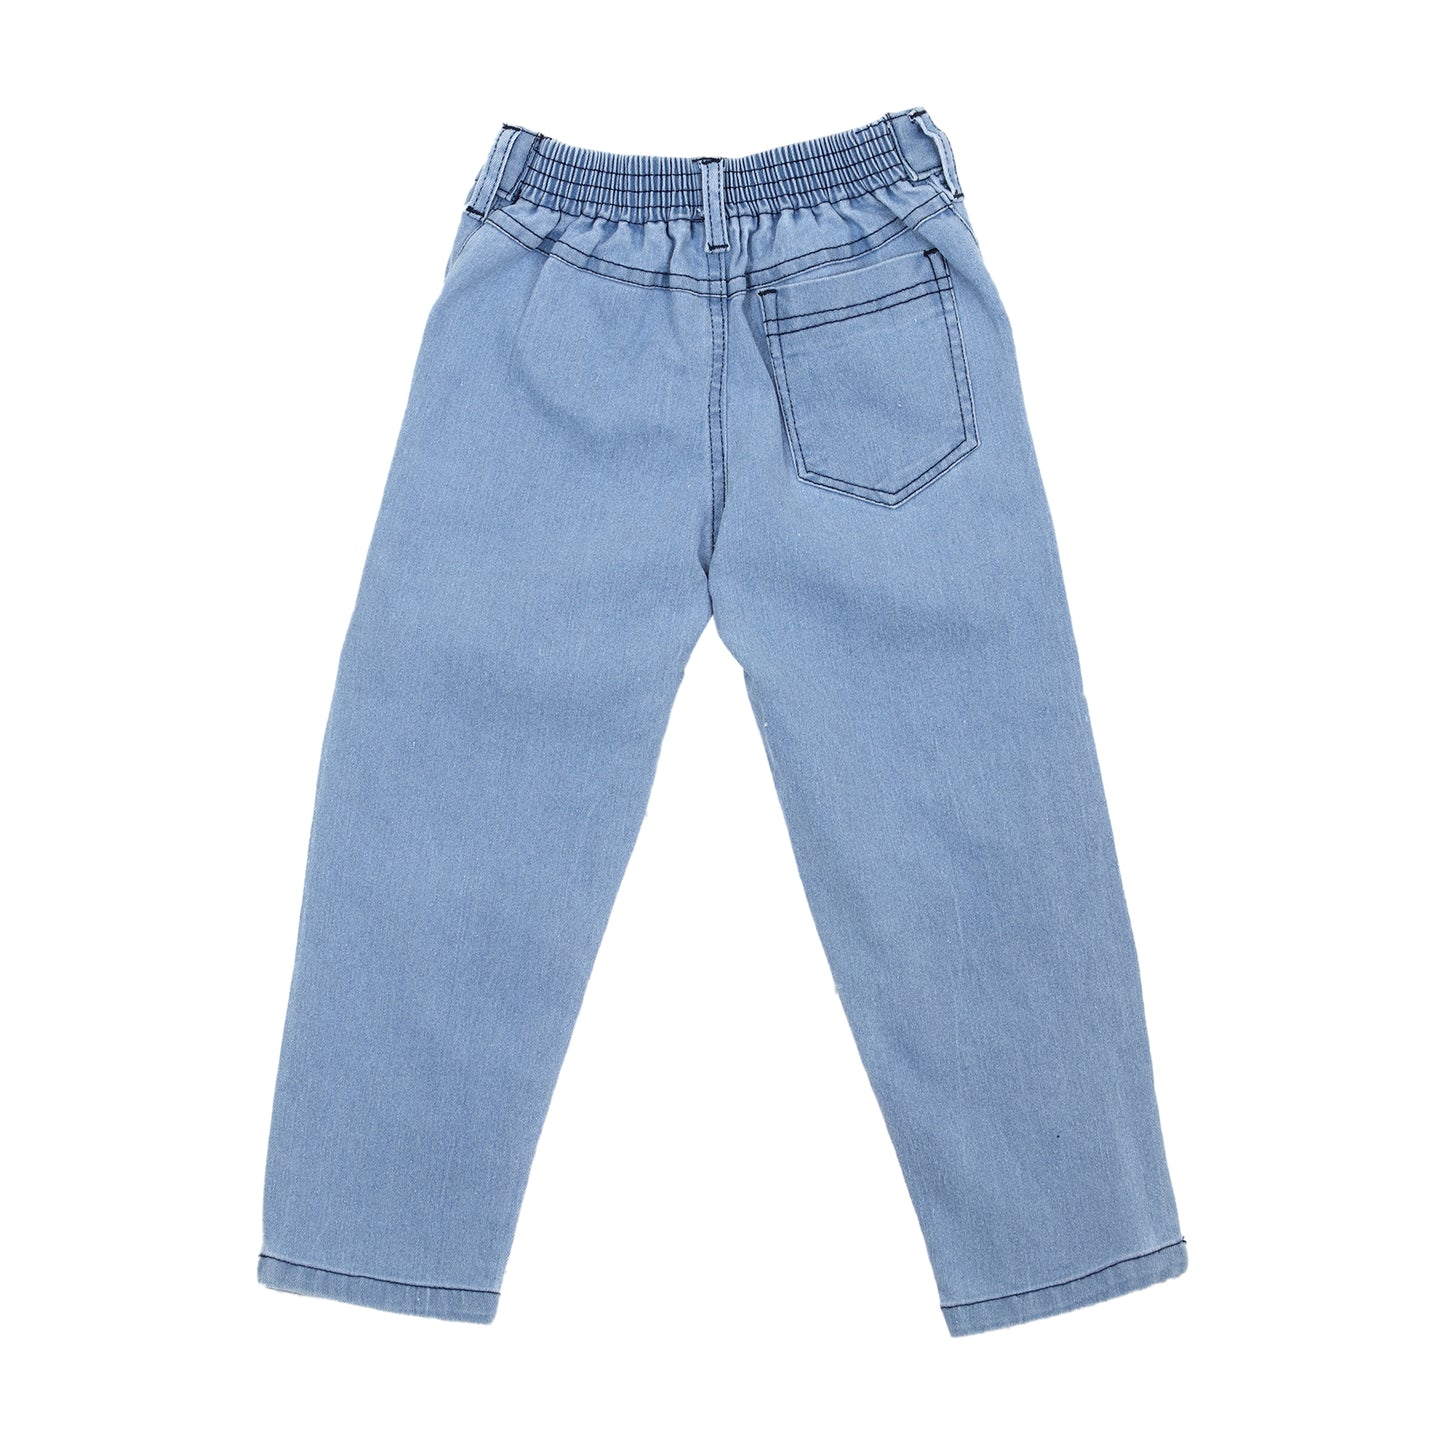 Denim Jeans for Girls - 6